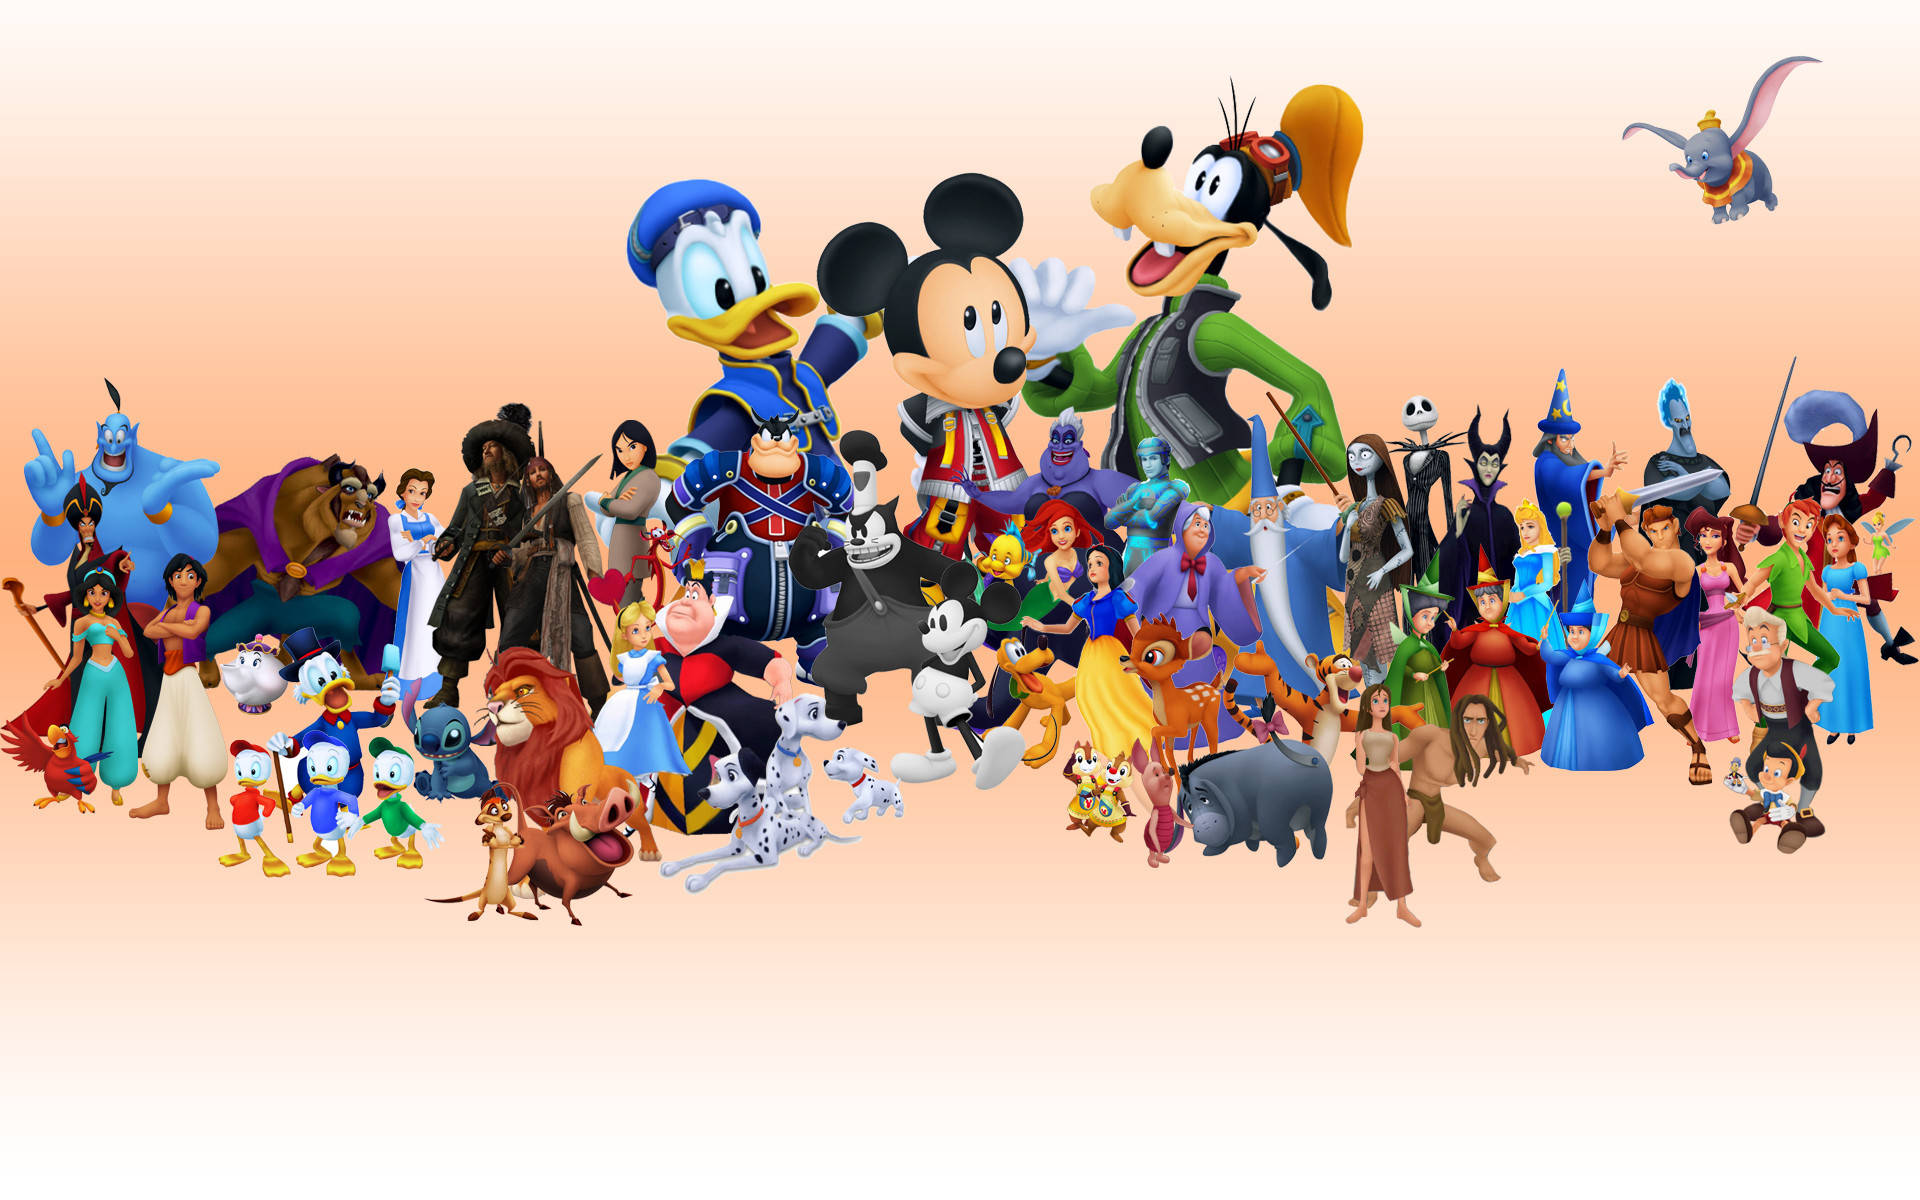 Personajesde Dibujos Animados De Disney Para El Escritorio Del Ordenador O El Fondo De Pantalla Del Móvil. Fondo de pantalla